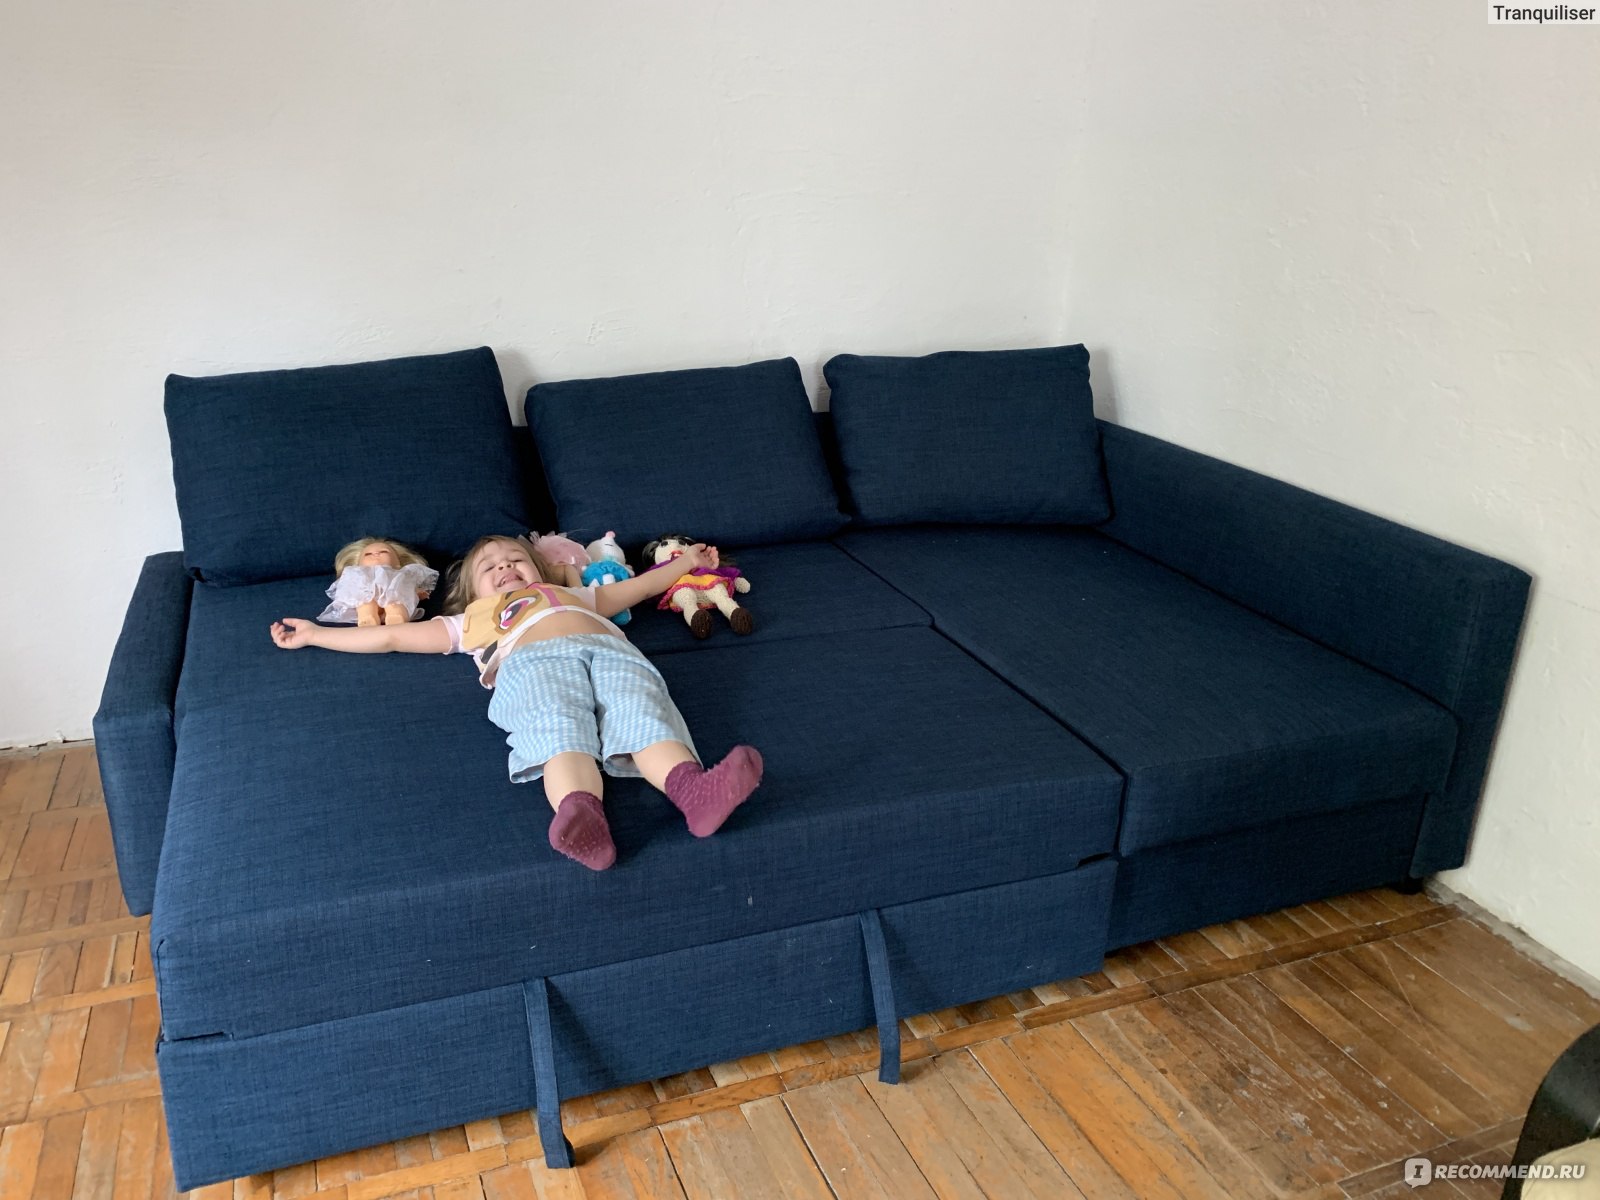 Диван-кровать Ikea Фрихетэн / FRIHETEN - «Купила два дивана за 12 и 15тысяч и поставила их вместе - шикарный домашний кинотеатр 🔥»